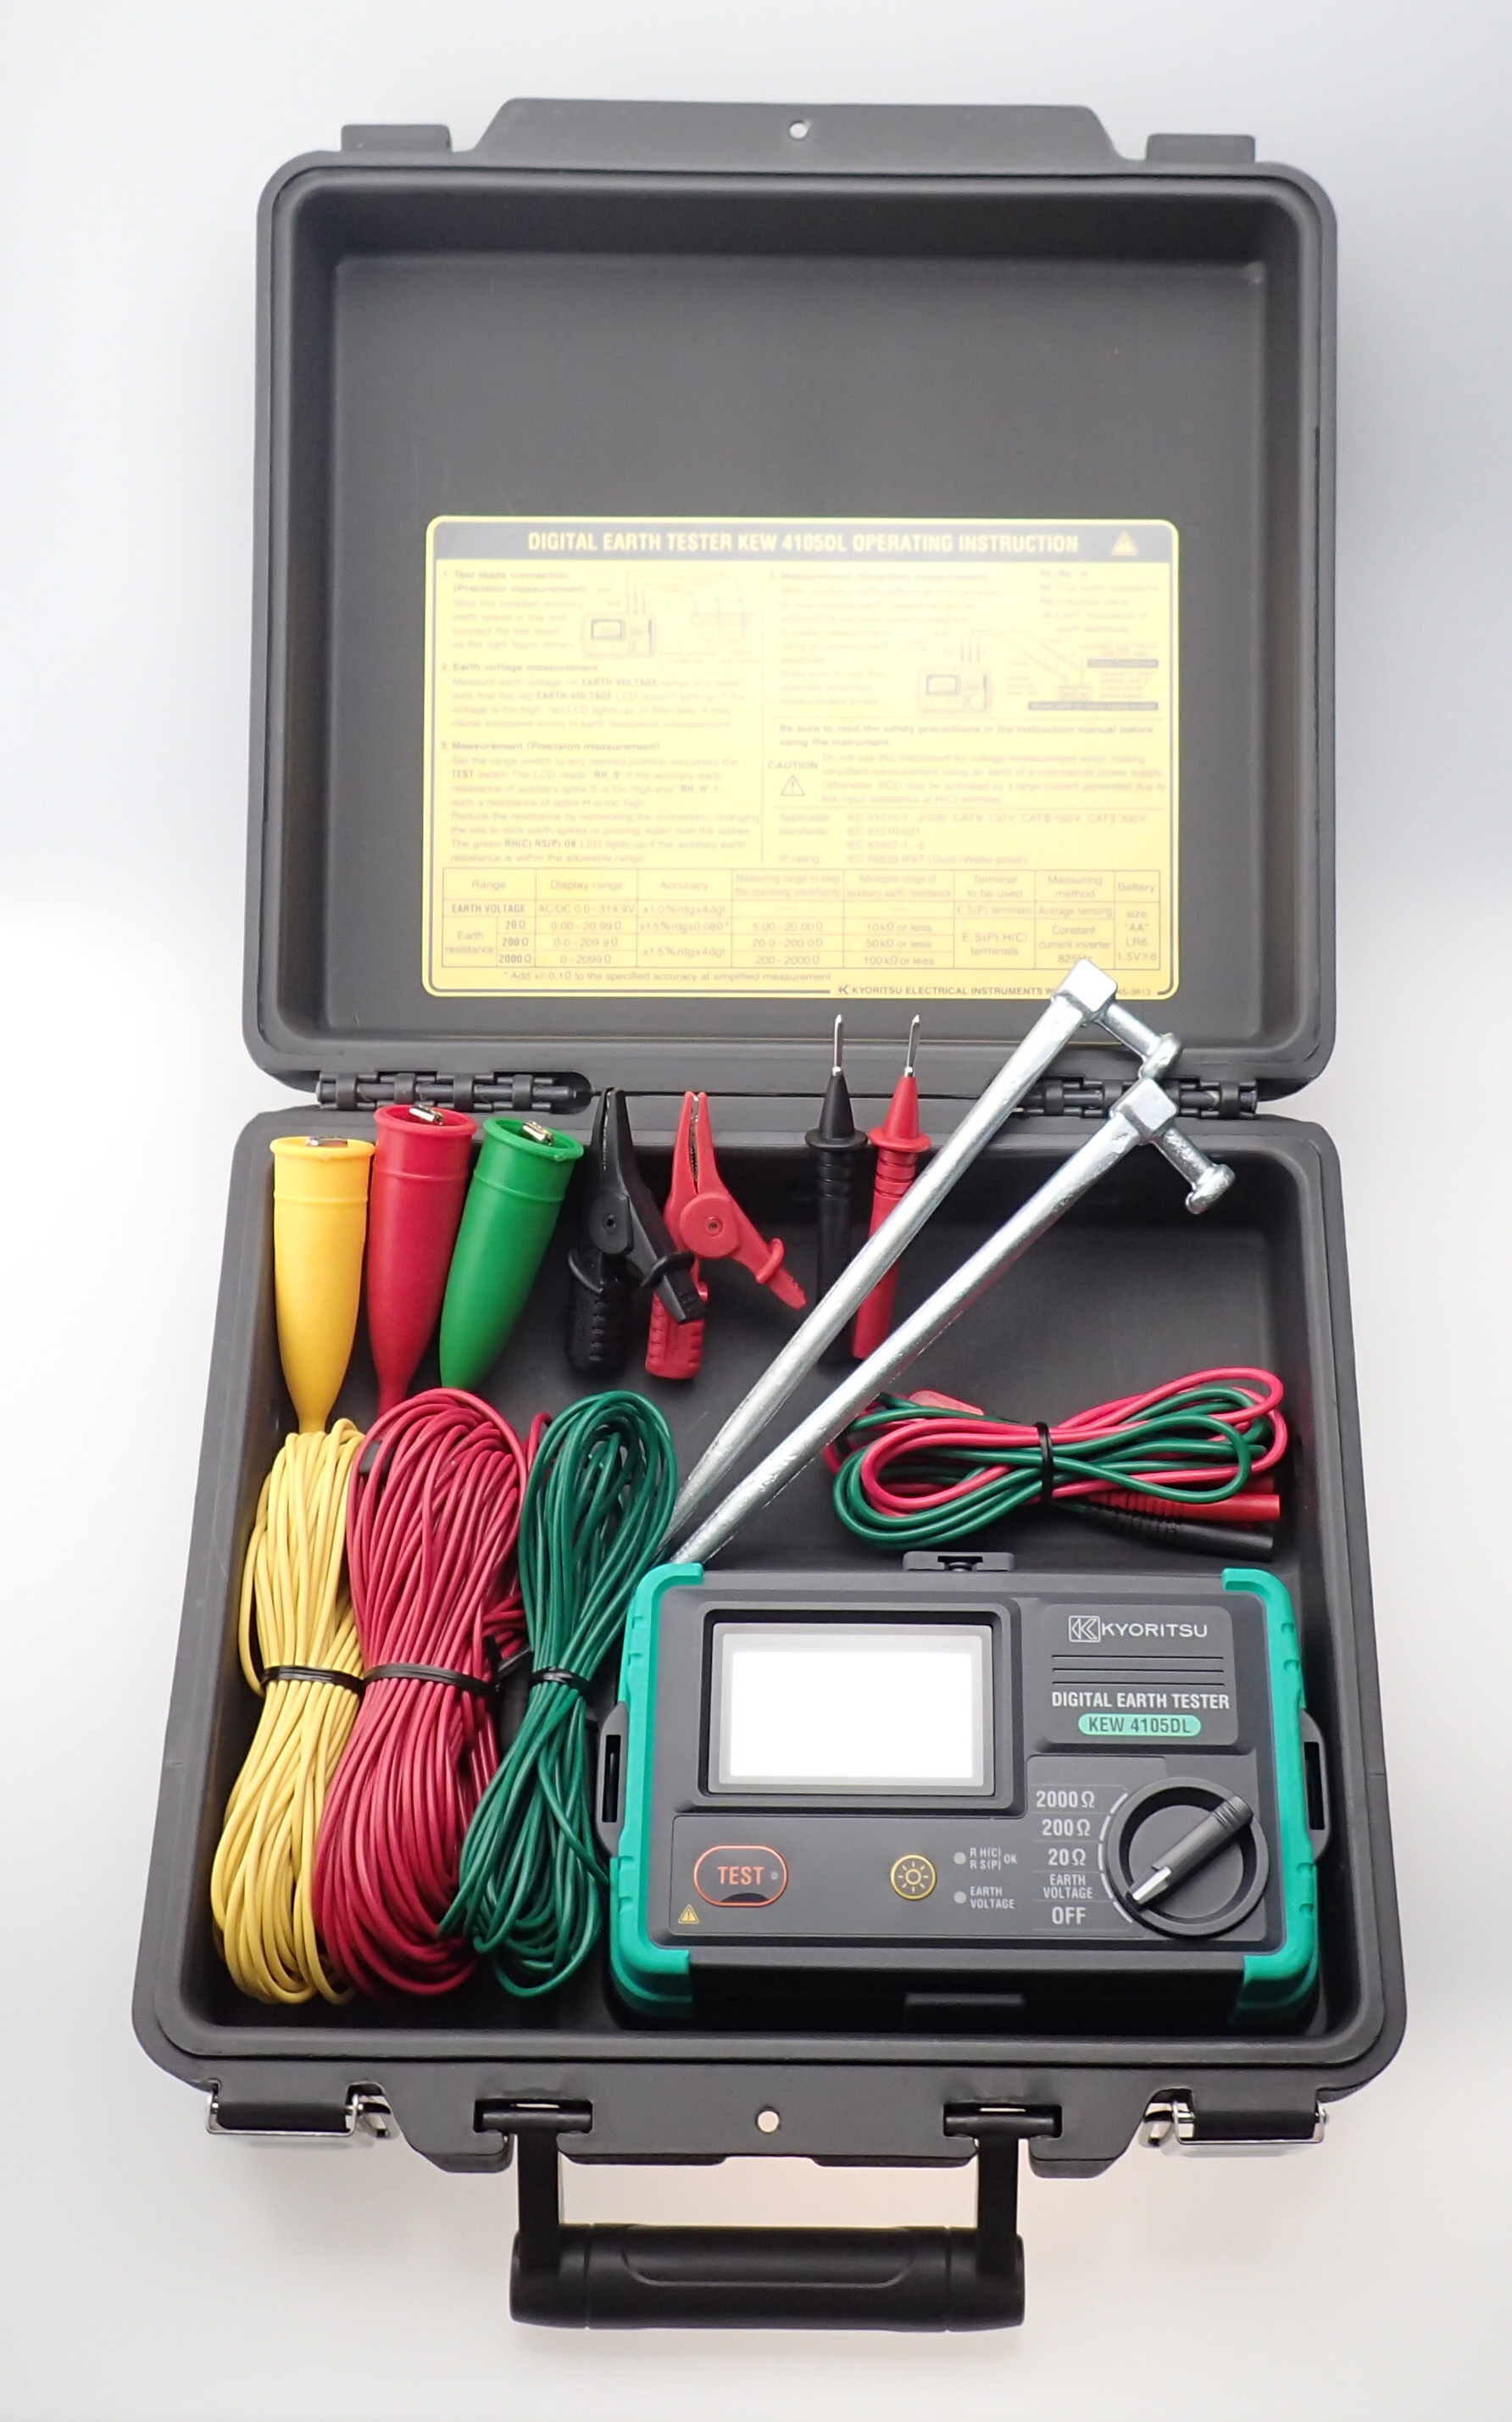 共立電気計器 (KYORITSU) デジタル接地抵抗計 KEW 4105DL